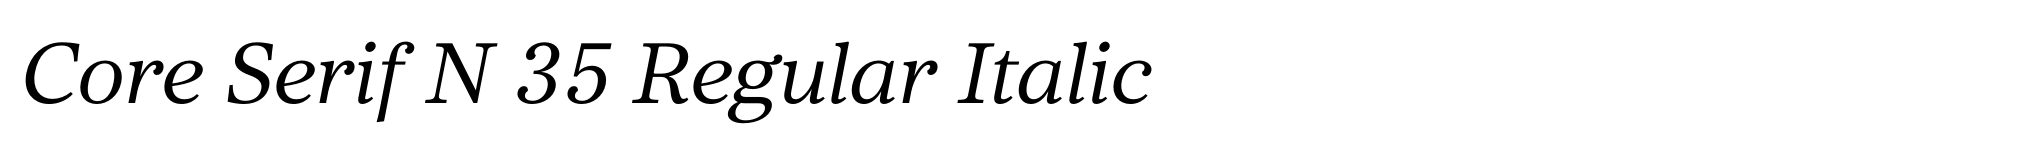 Bild Core Serif N 35 Regular Italic